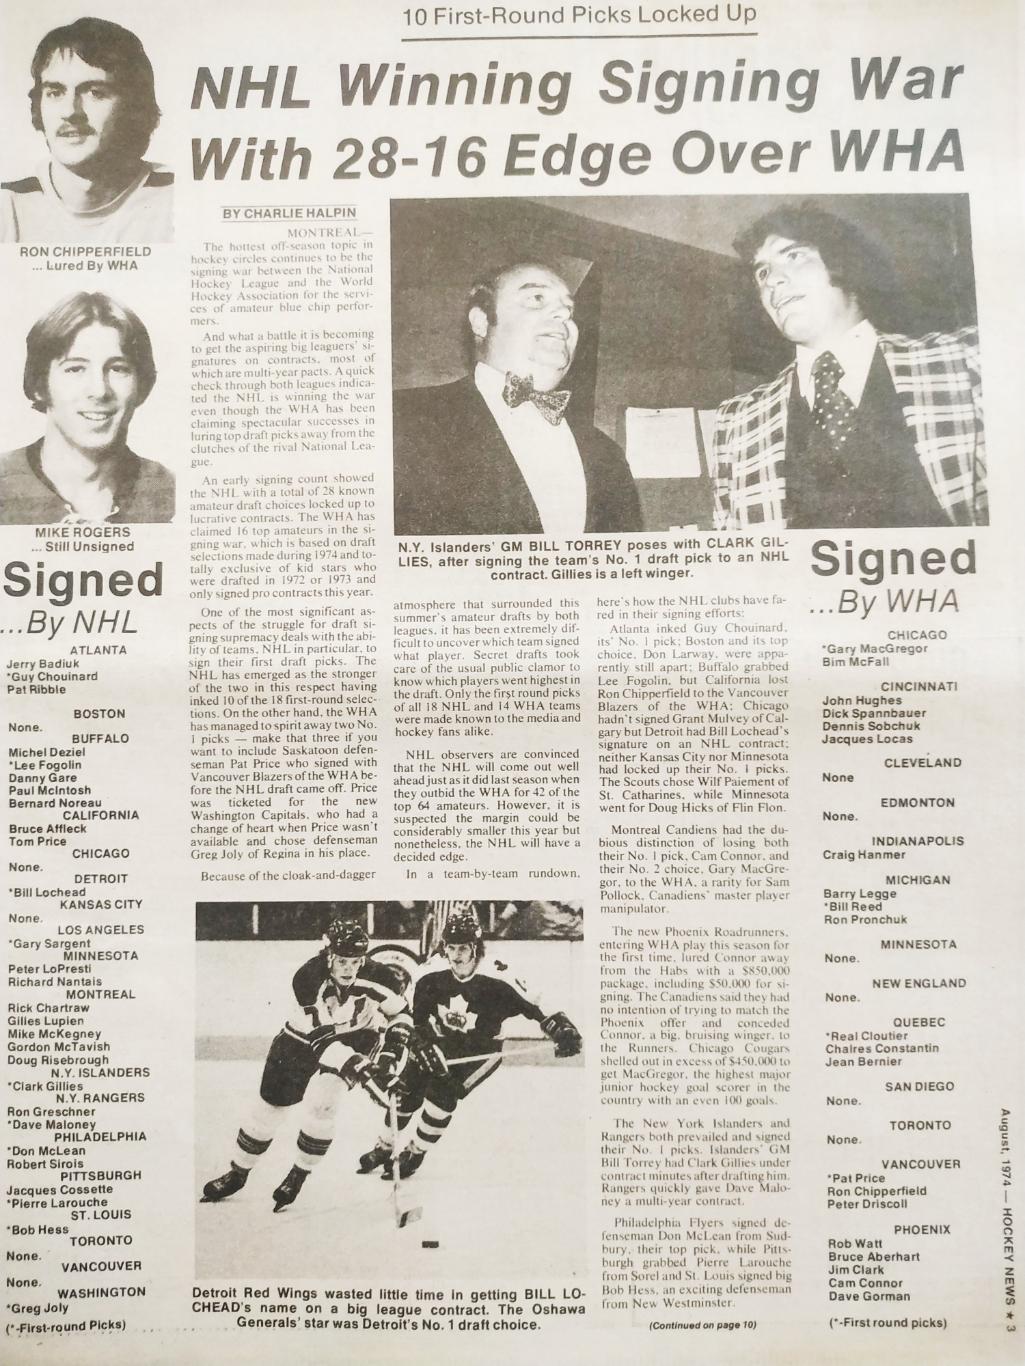 ХОККЕЙ ЖУРНАЛ ЕЖЕНЕДЕЛЬНИК НХЛ НОВОСТИ ХОККЕЯ AUGUST 1974 NHL THE HOCKEY NEWS 2